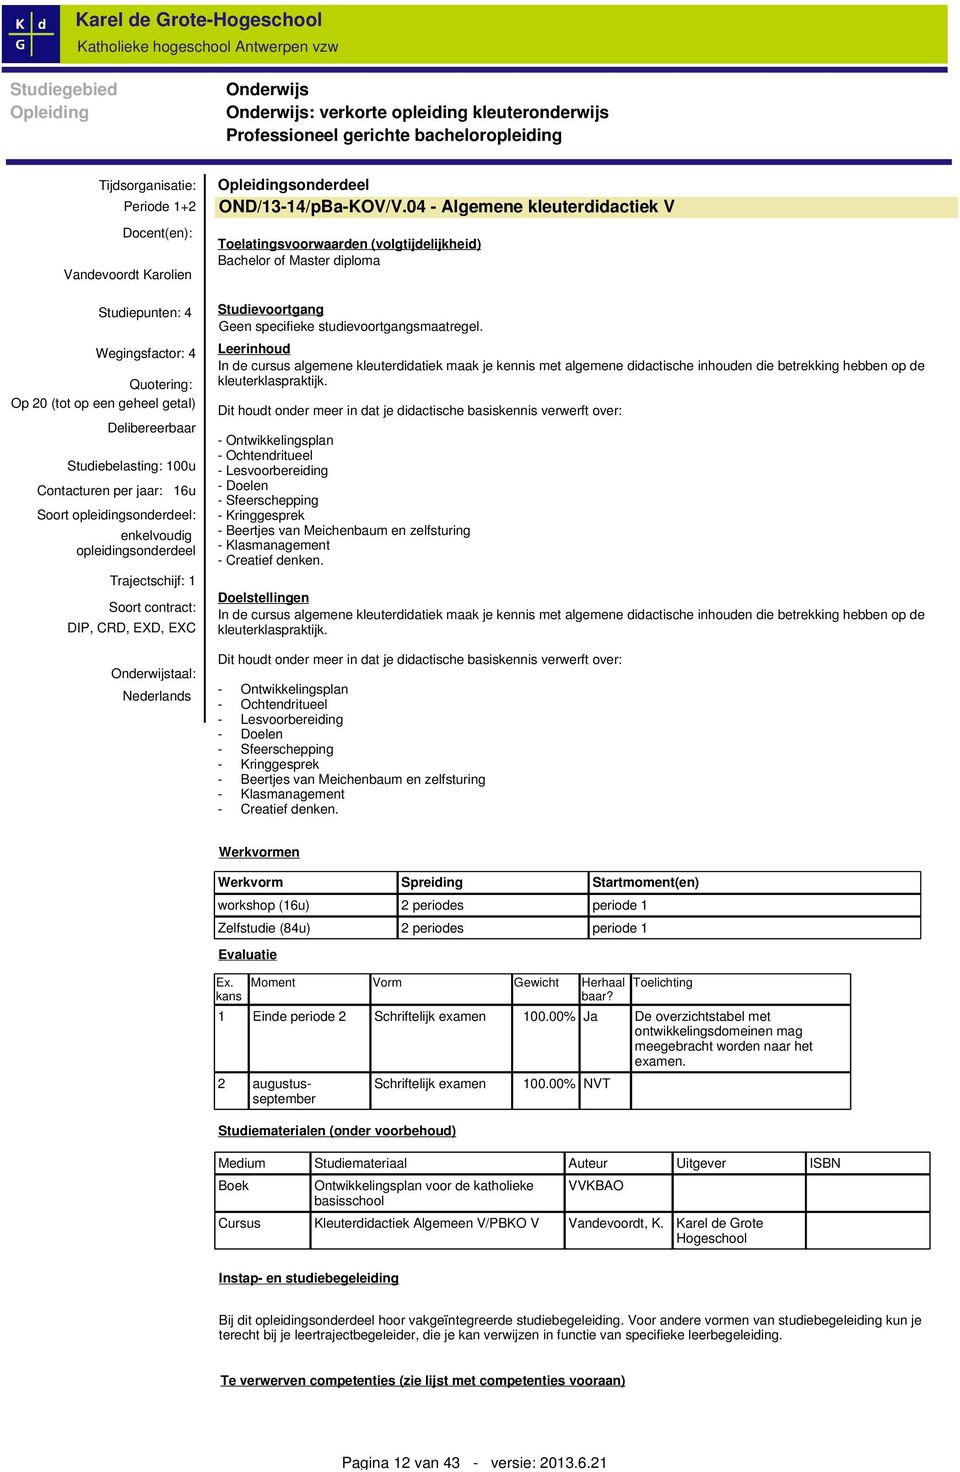 Soort contract: DIP, CRD, EXD, EXC Onderwijstaal: Nederlands Opleidingsonderdeel OND/13-14/pBa-KOV/V.